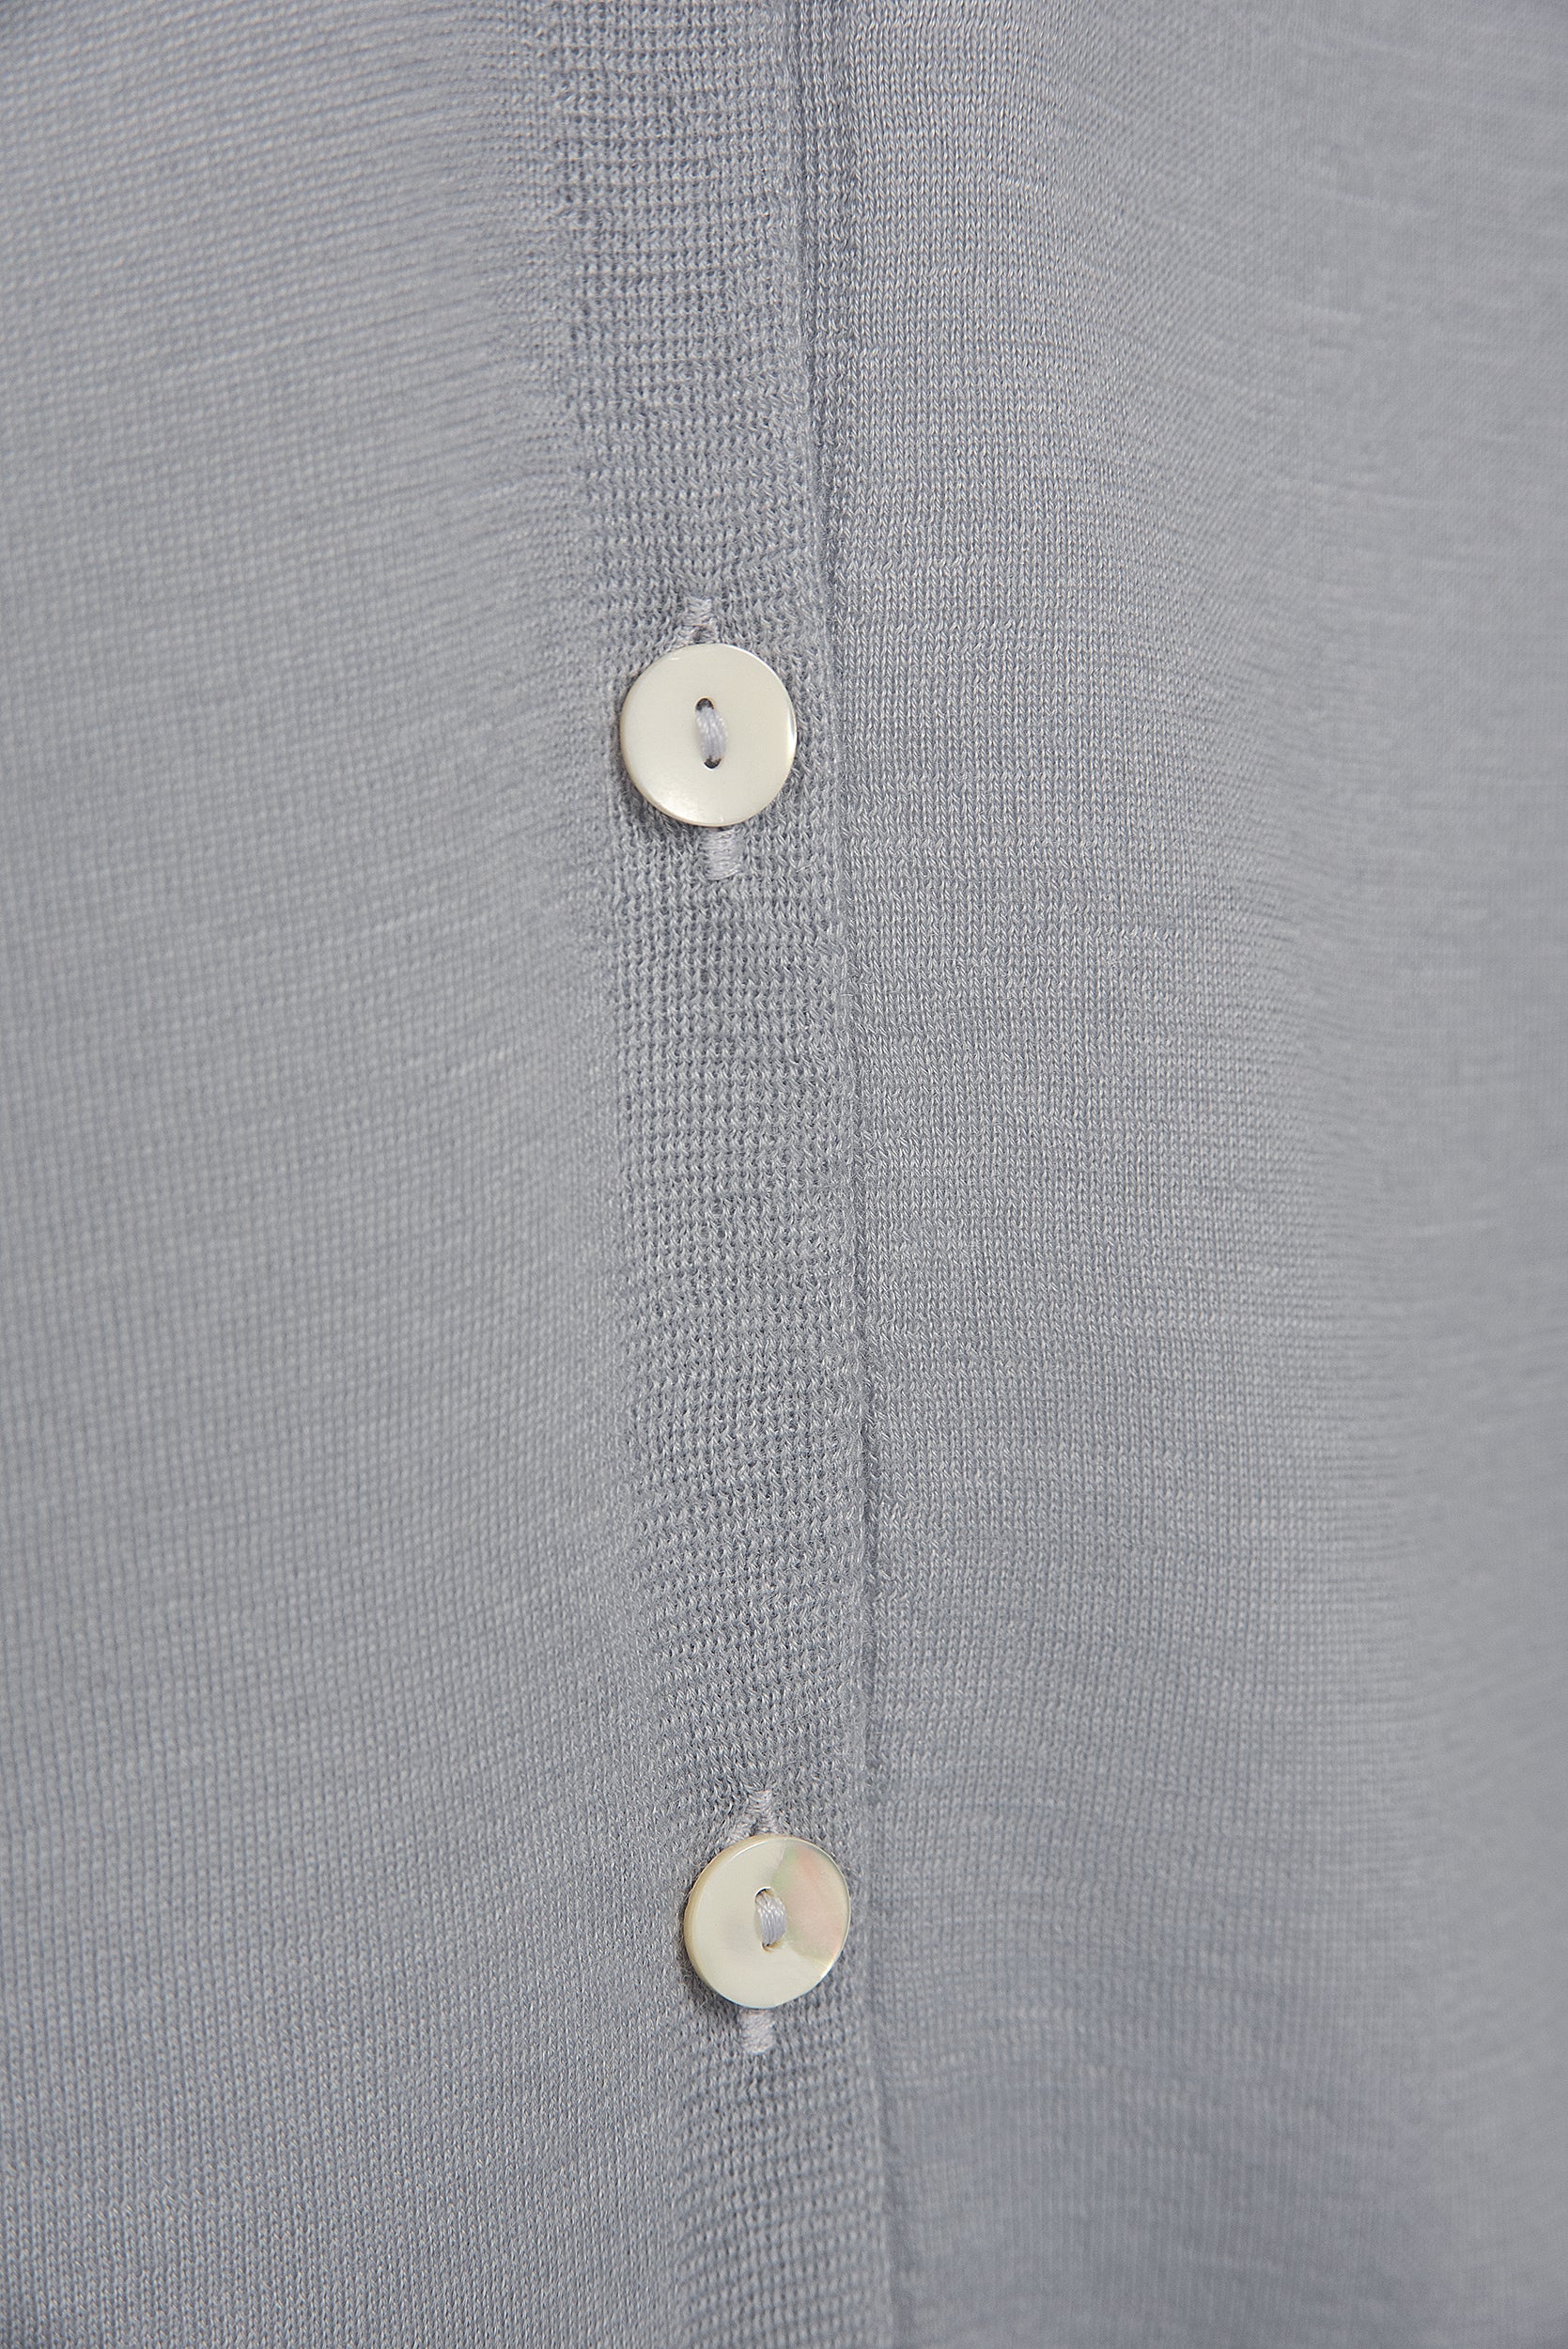 Atelier Verdi Light Steel Blue Carolina Cashmere Cardigan Button Detail